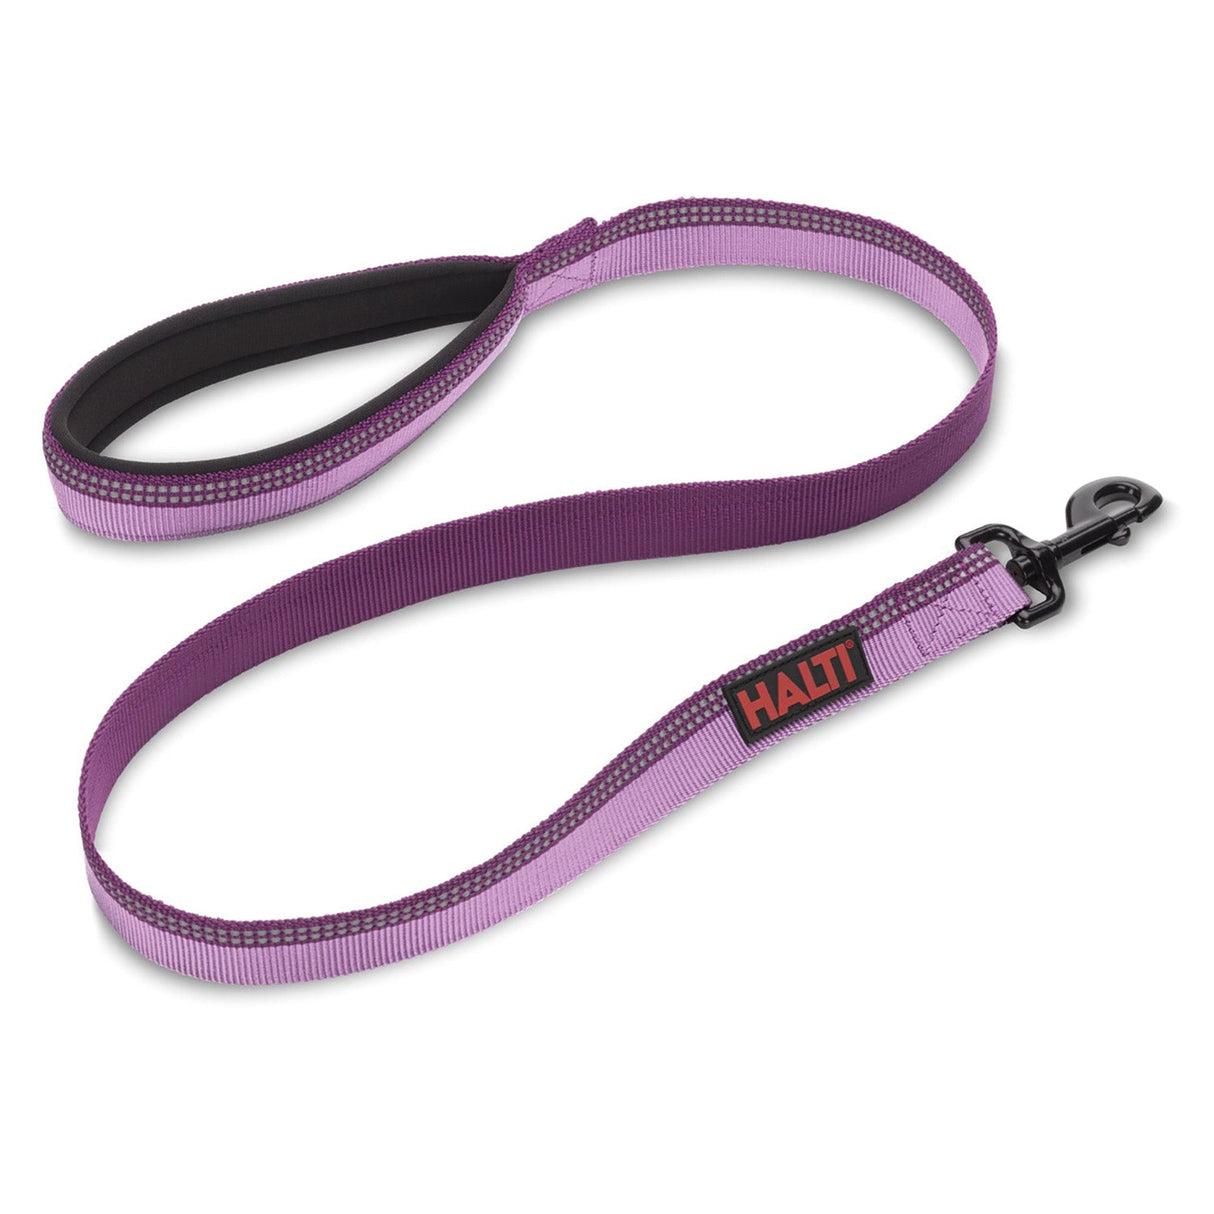 Halti Lead Purple  Pet Leads